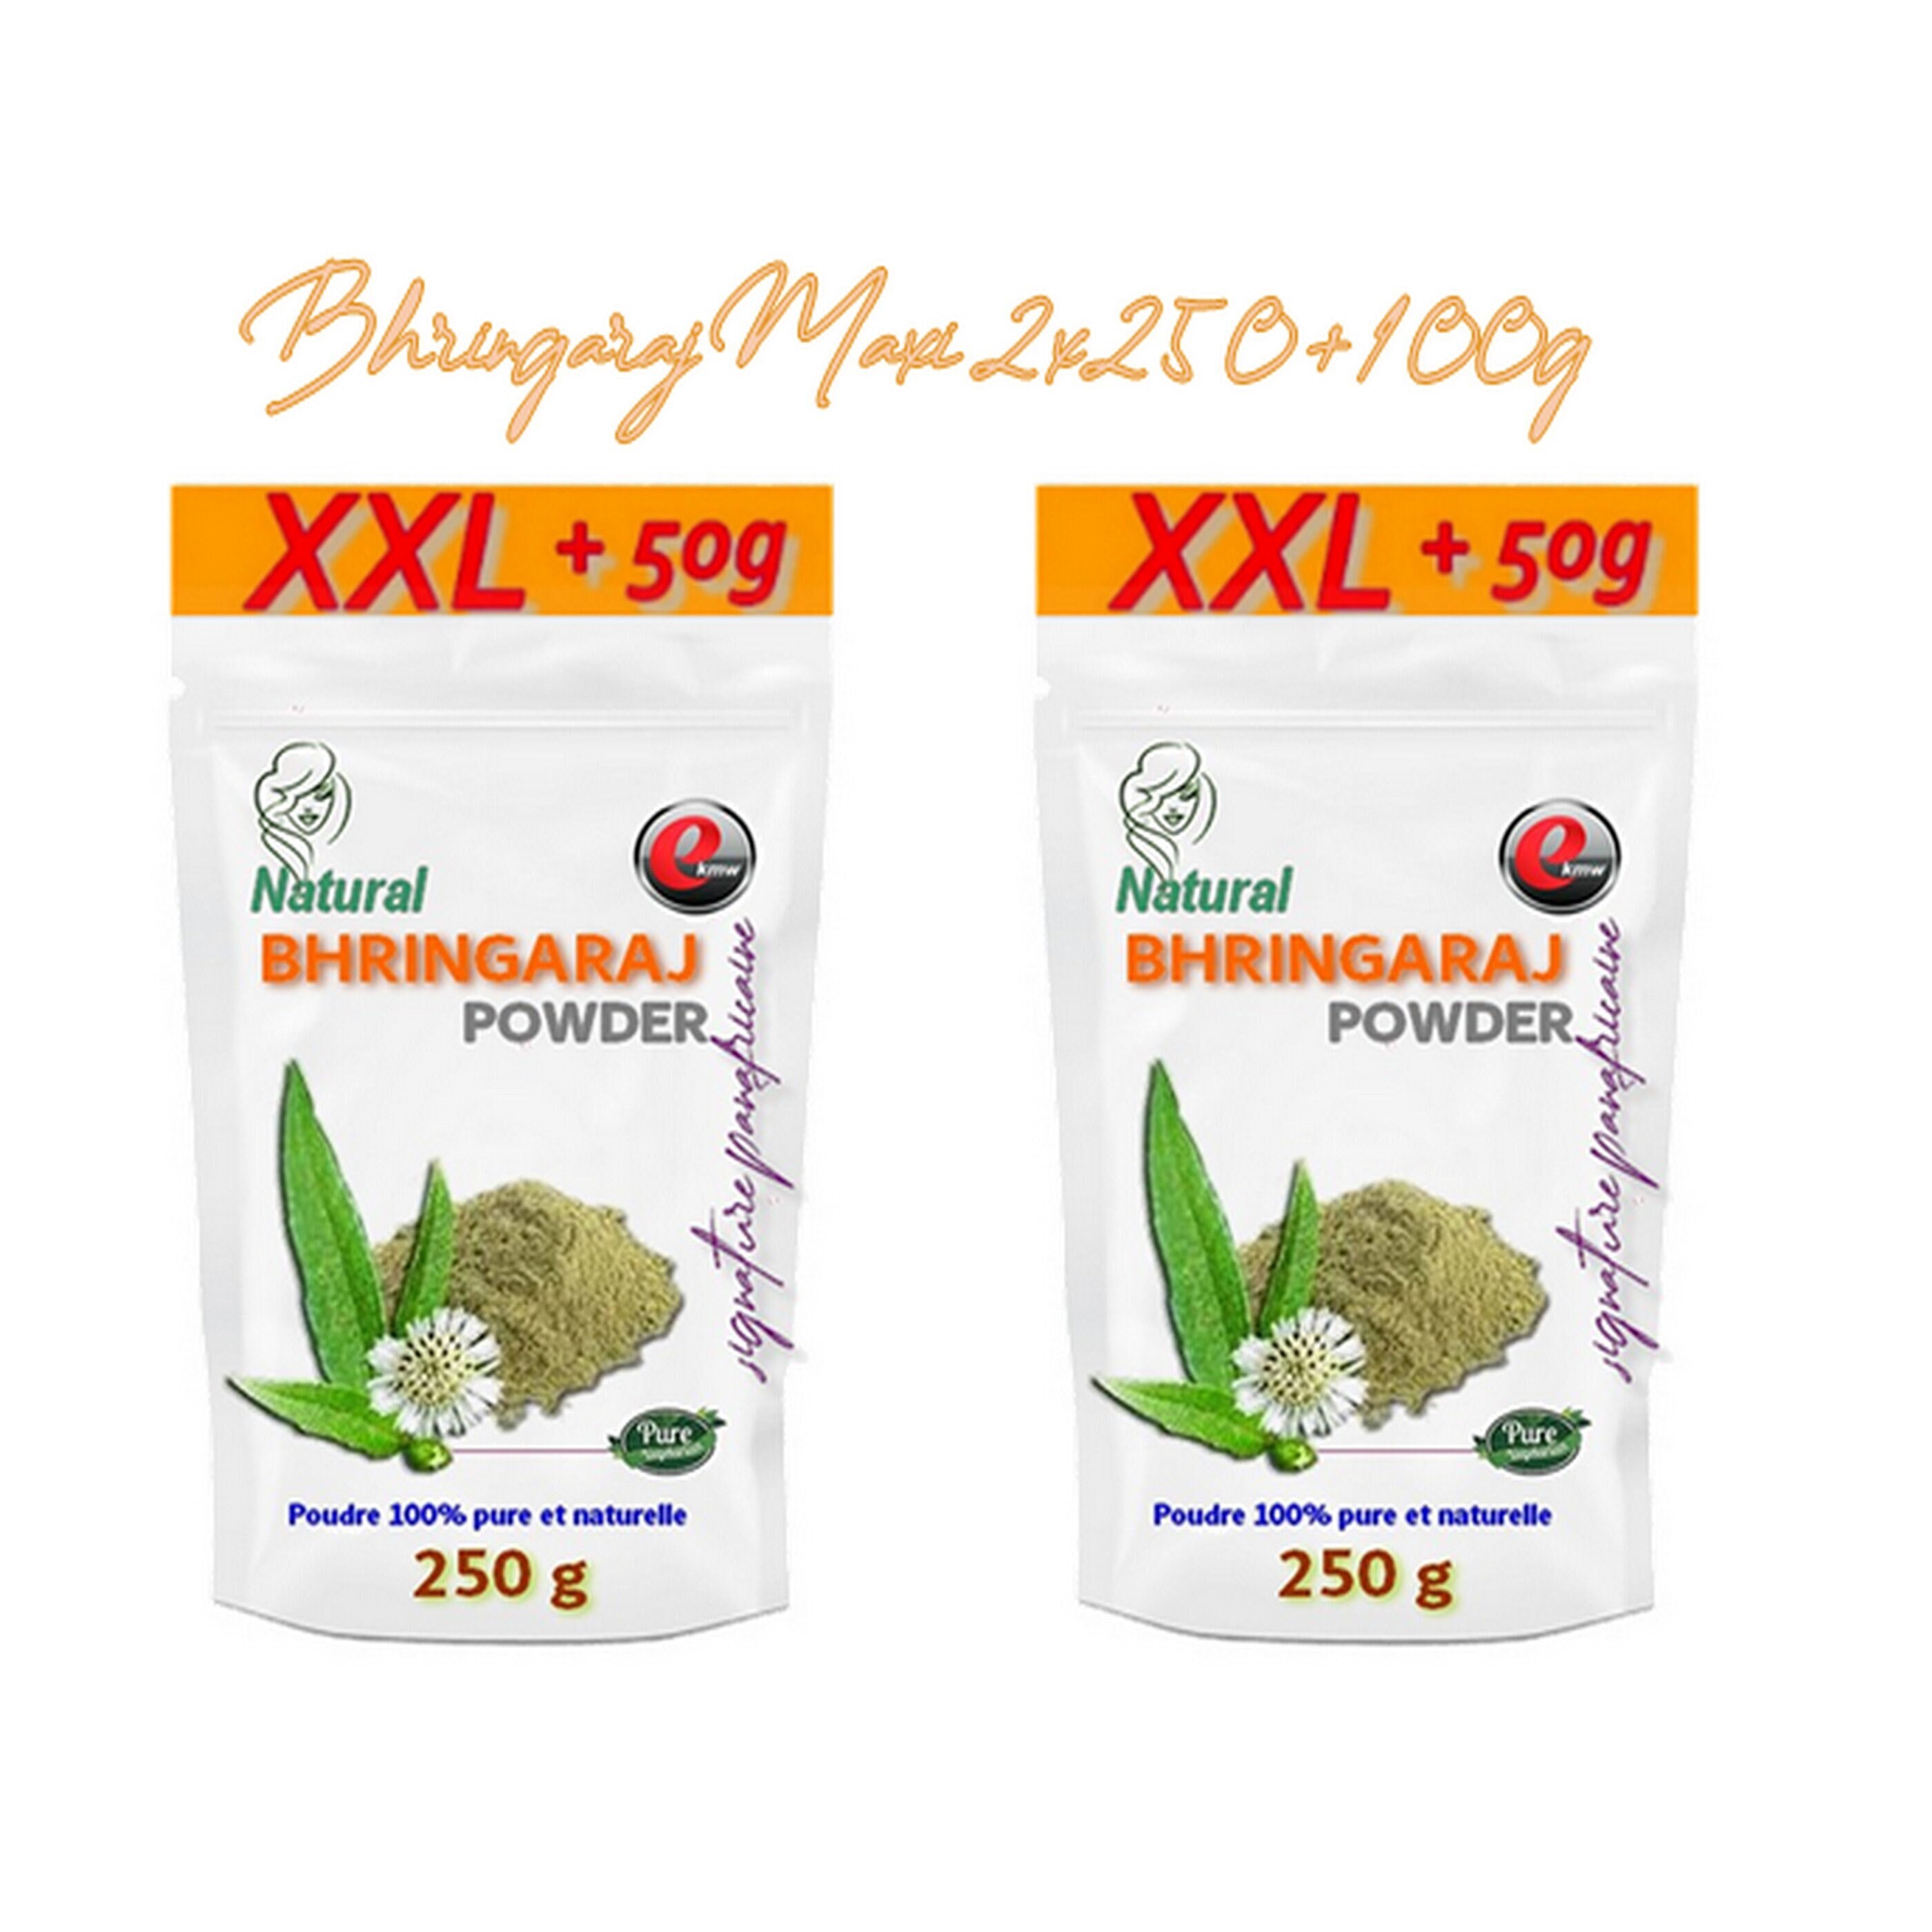 Poudre de Bhringaraj 100% Pure & Naturelle 100g Lotus Bio